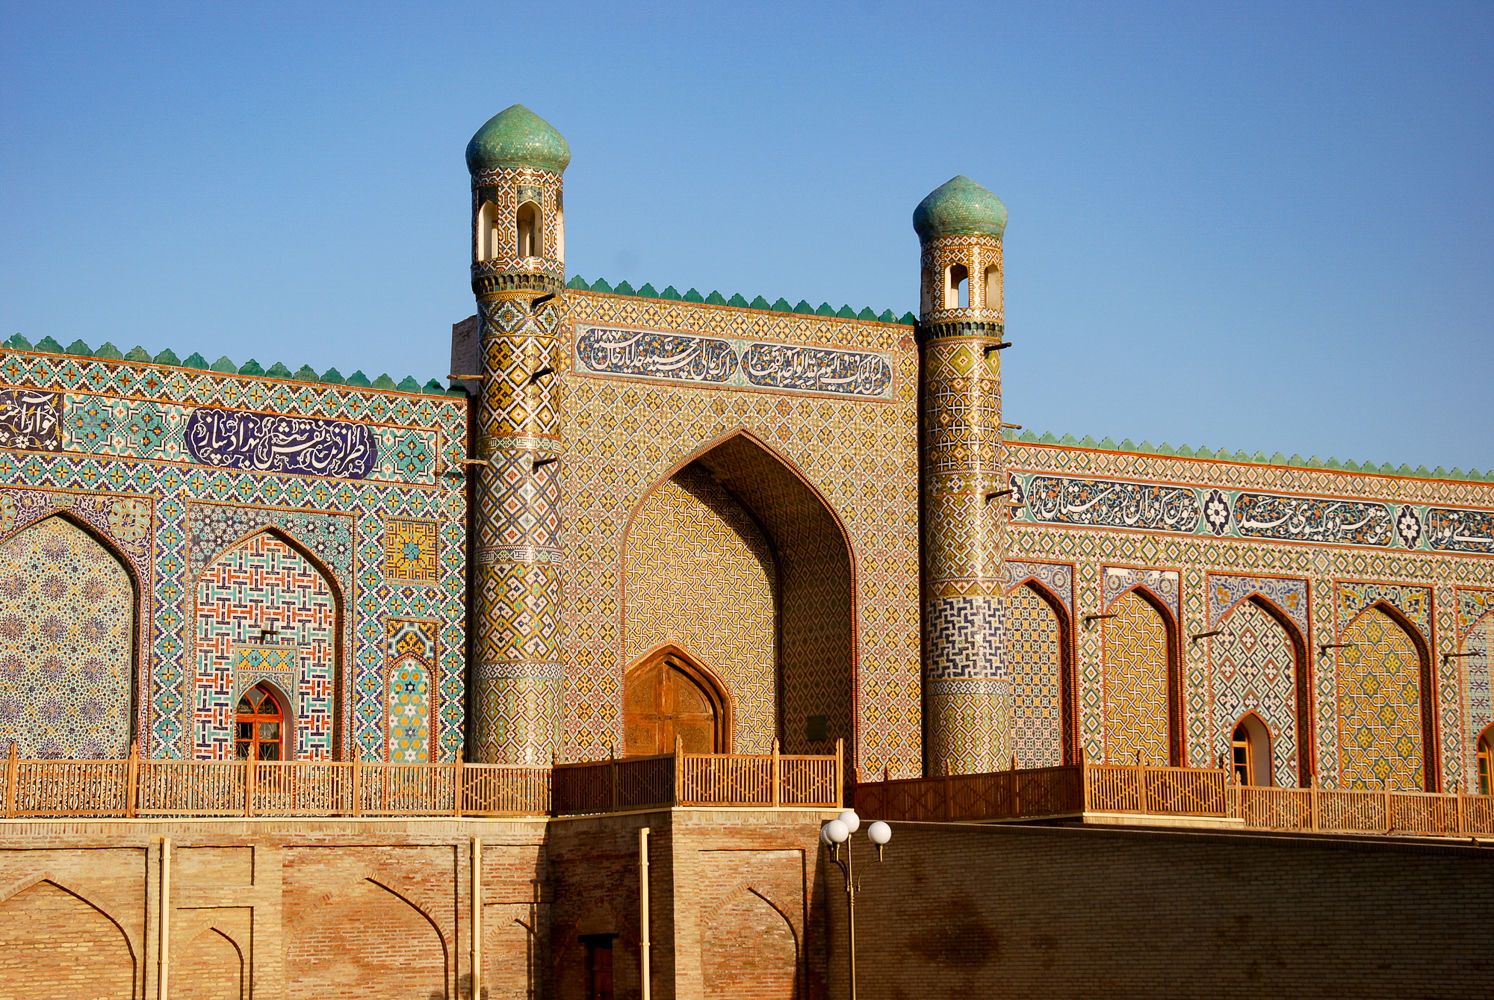 کاخ شهر کوکند Khudoyar khan در Fergana ازبکستان سفر می کند